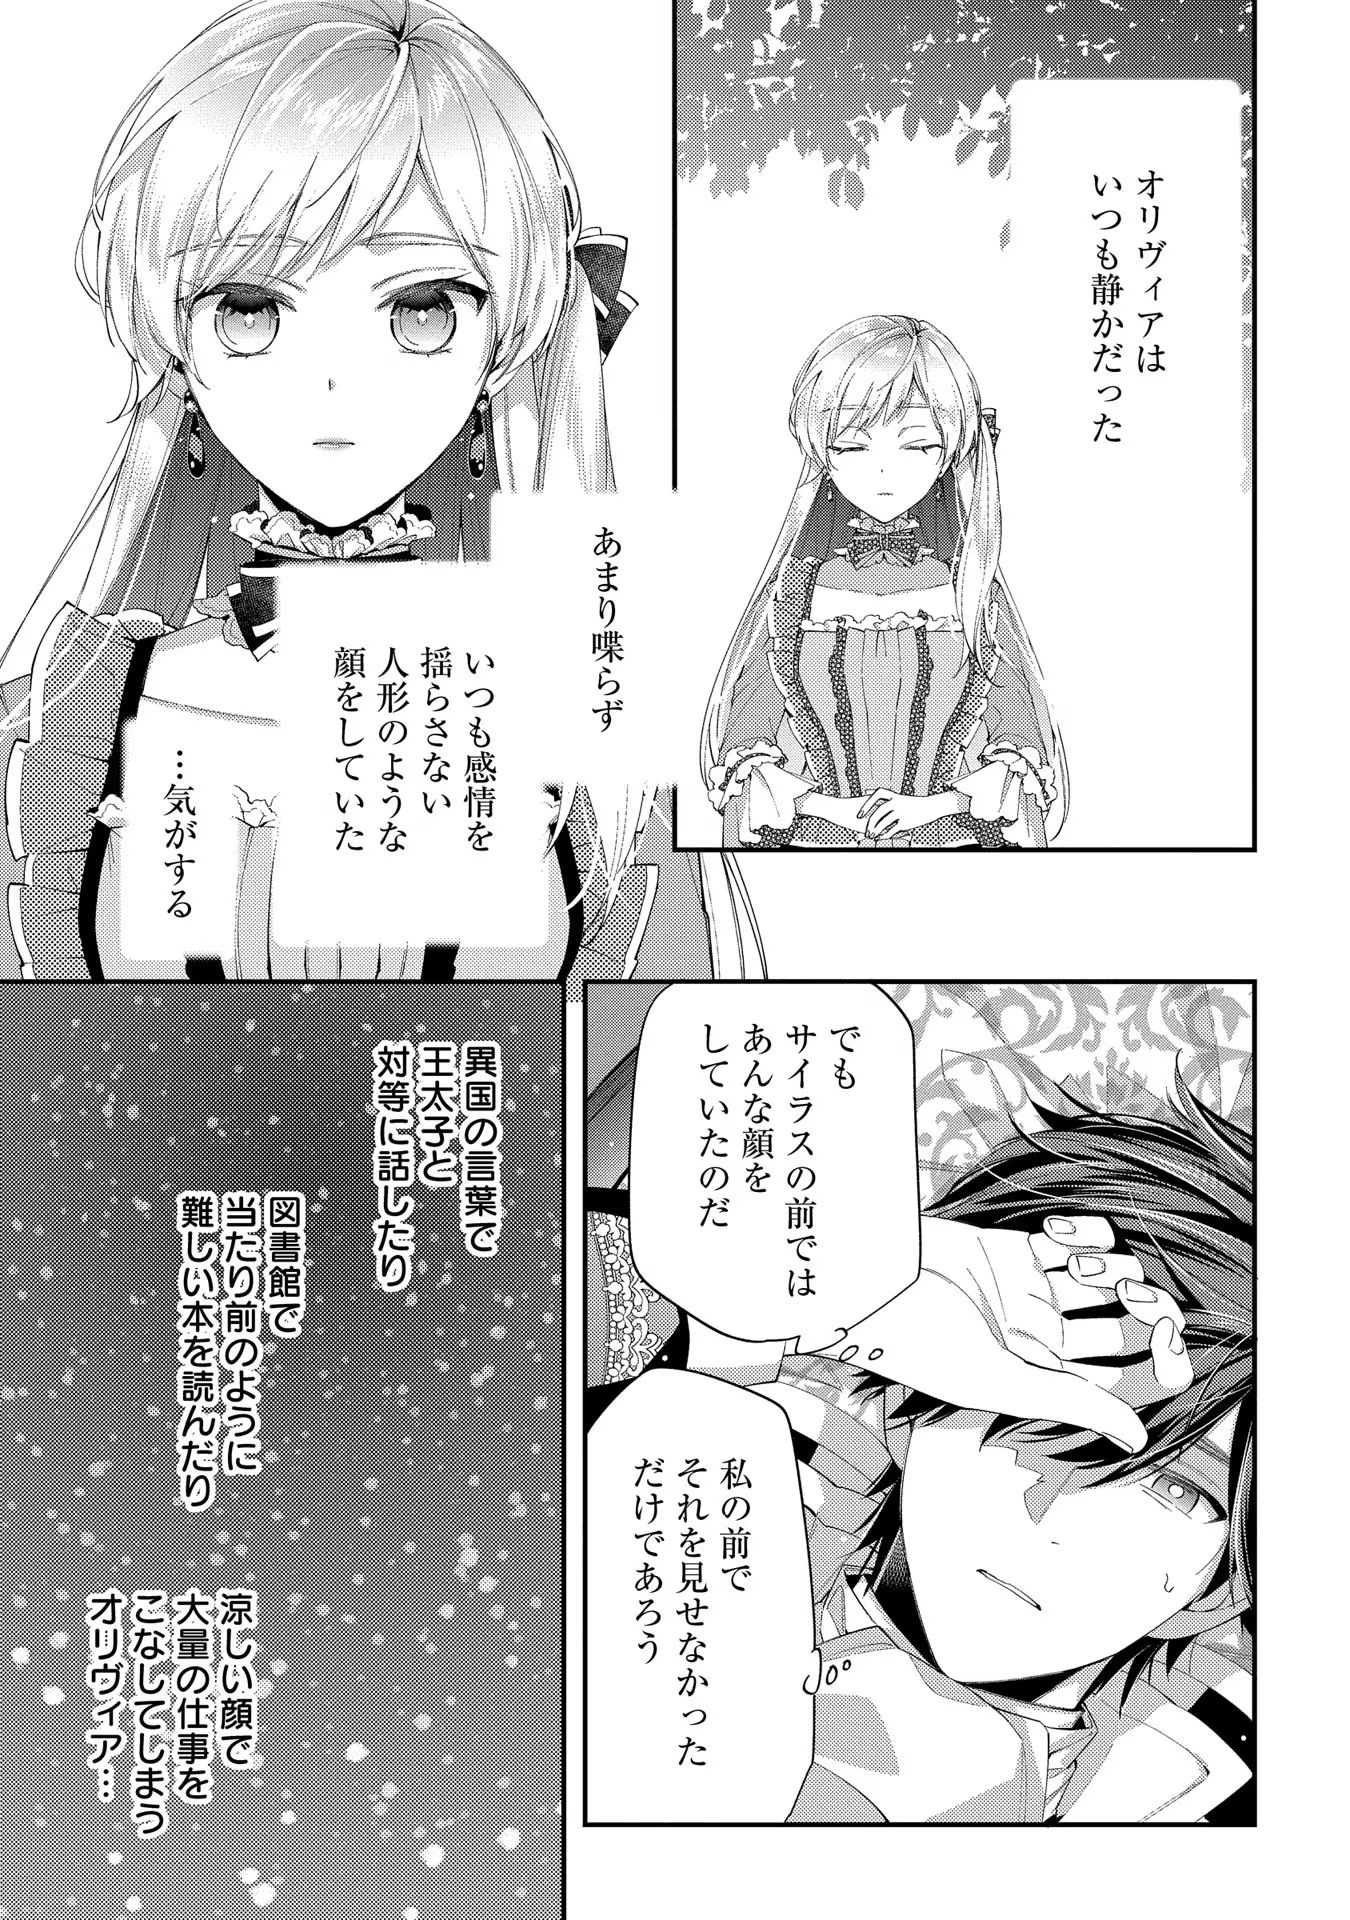 Outaishi ni Konyaku Hakisareta no de, Mou Baka no Furi wa Yameyou to Omoimasu - Chapter 13 - Page 19